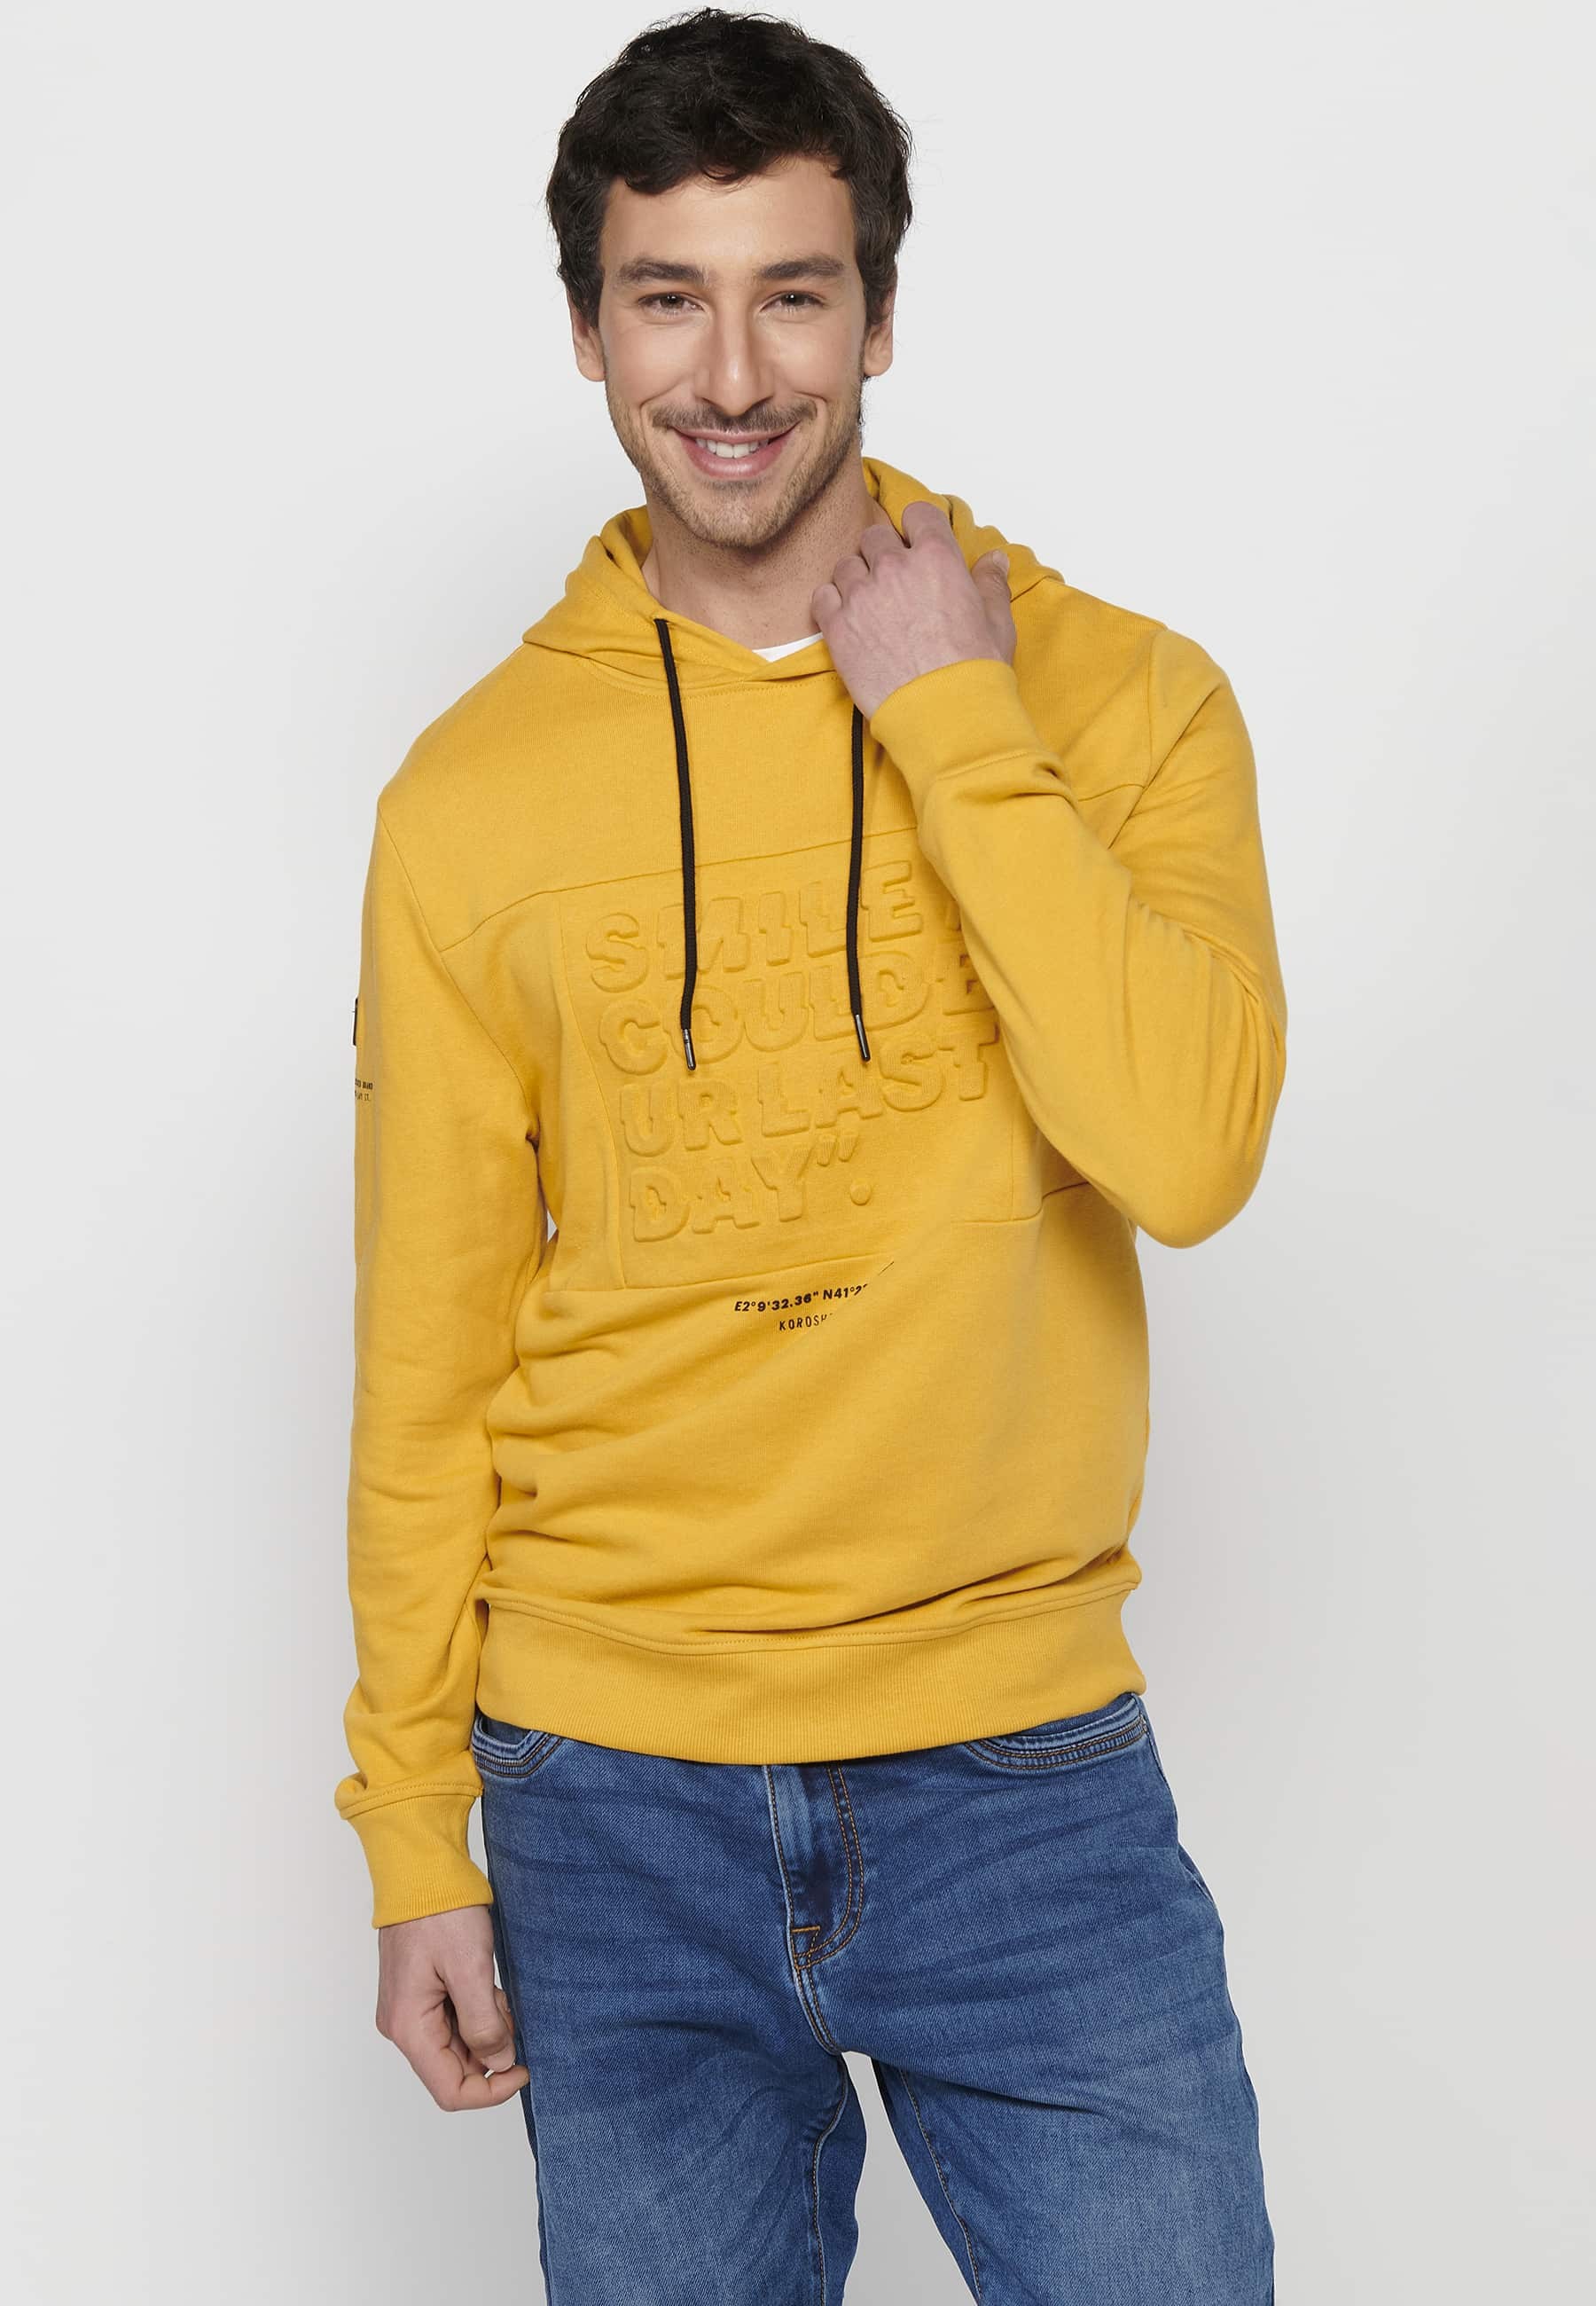 Sudadera de manga larga con Acabados en rib y Cuello con capucha con Detalle delantero de letras en relieve de Color Amarillo para Hombre